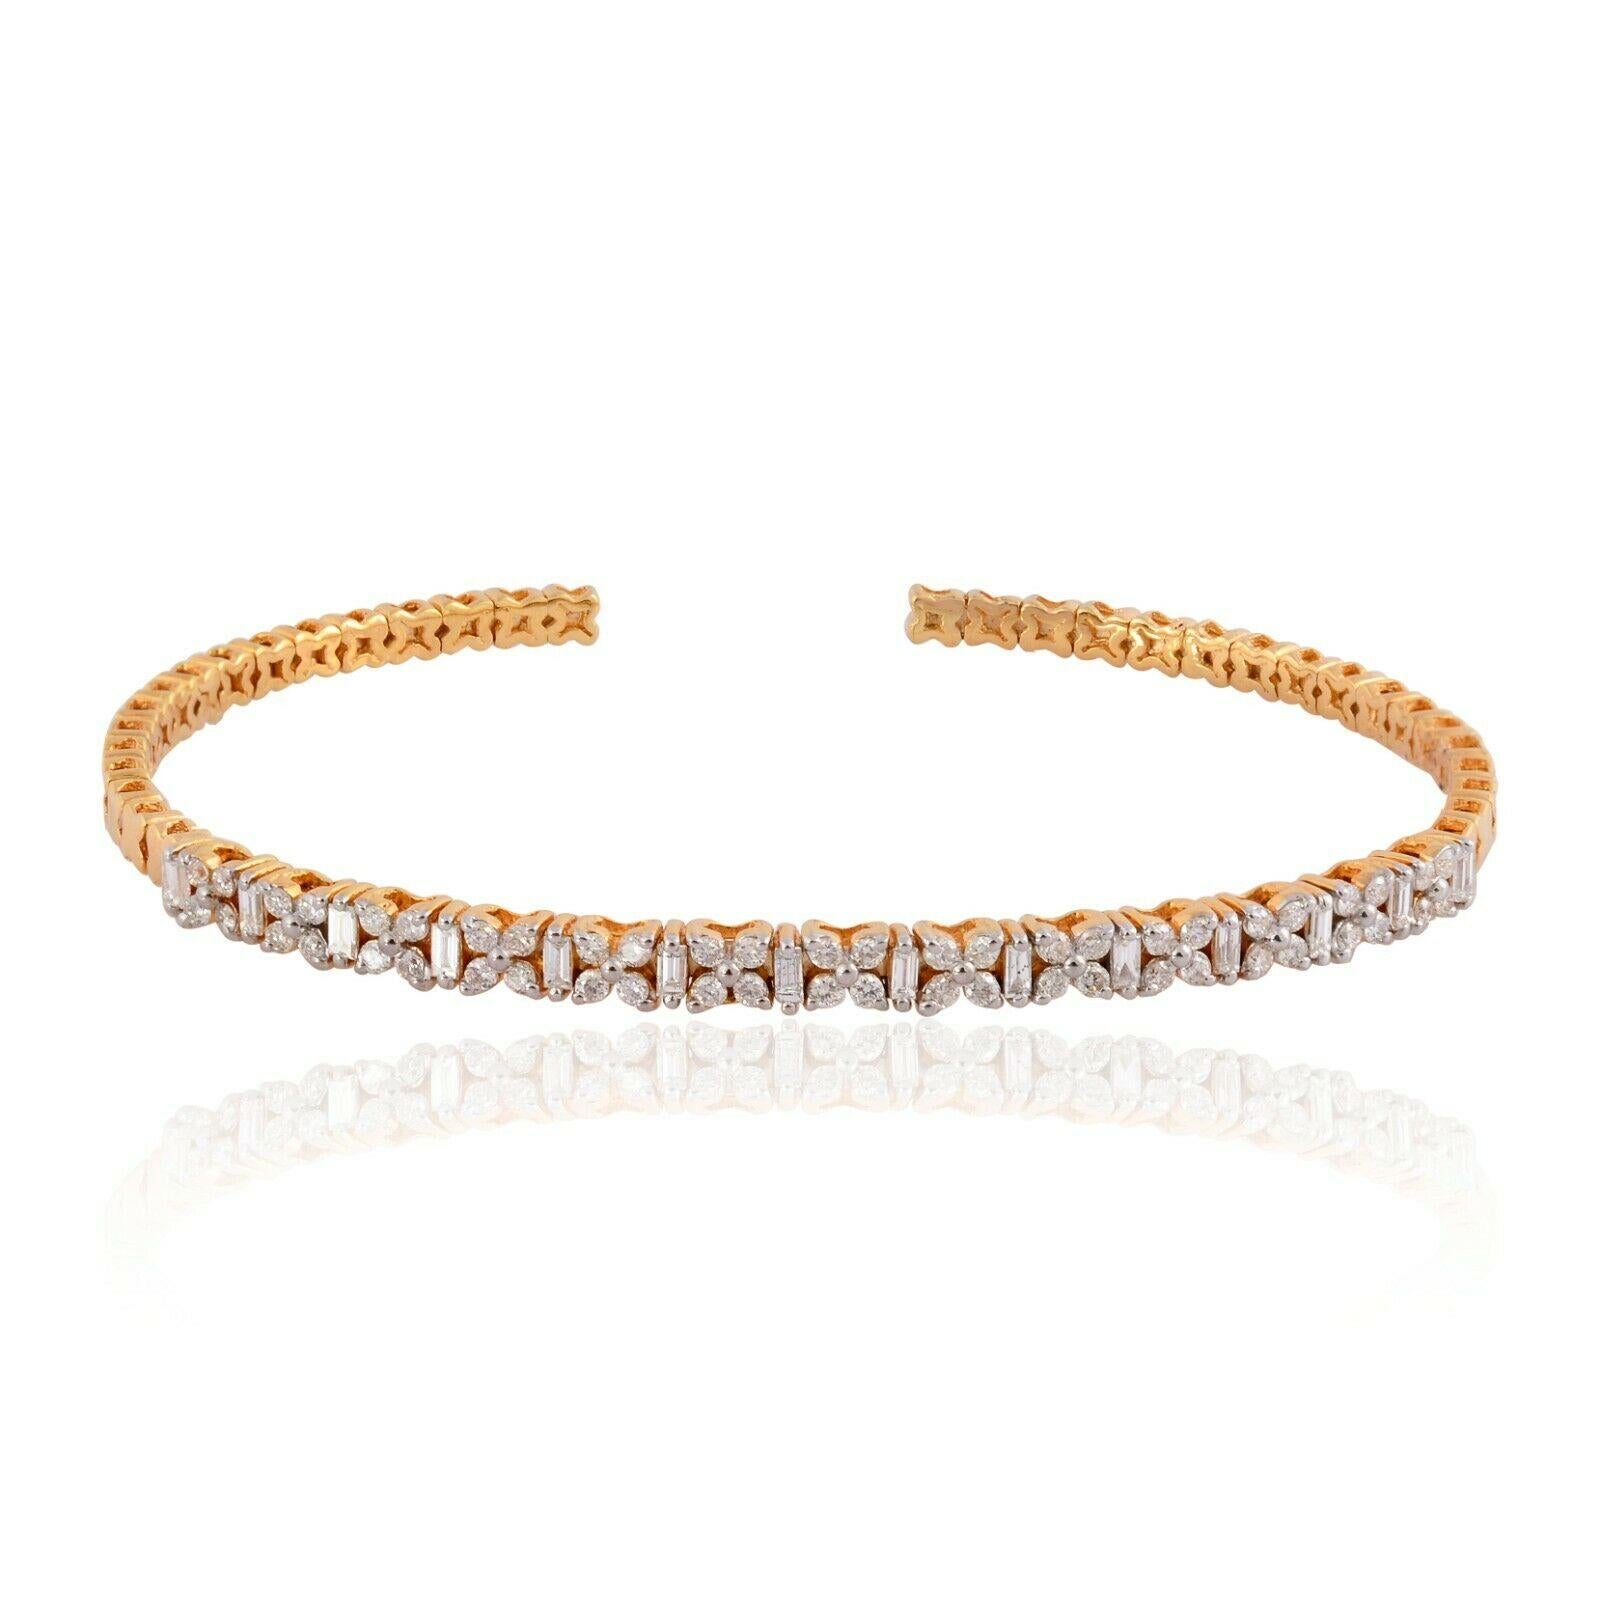 Dieses Armband aus 14-karätigem Gelbgold ist von Hand mit funkelnden Diamanten von 0,85 Karat besetzt. Erhältlich in Gelb-, Rosé- und Weißgold. Kombinieren Sie ihn mit Ihren Lieblingsstücken oder tragen Sie ihn allein.

FOLLOW MEGHNA JEWELS